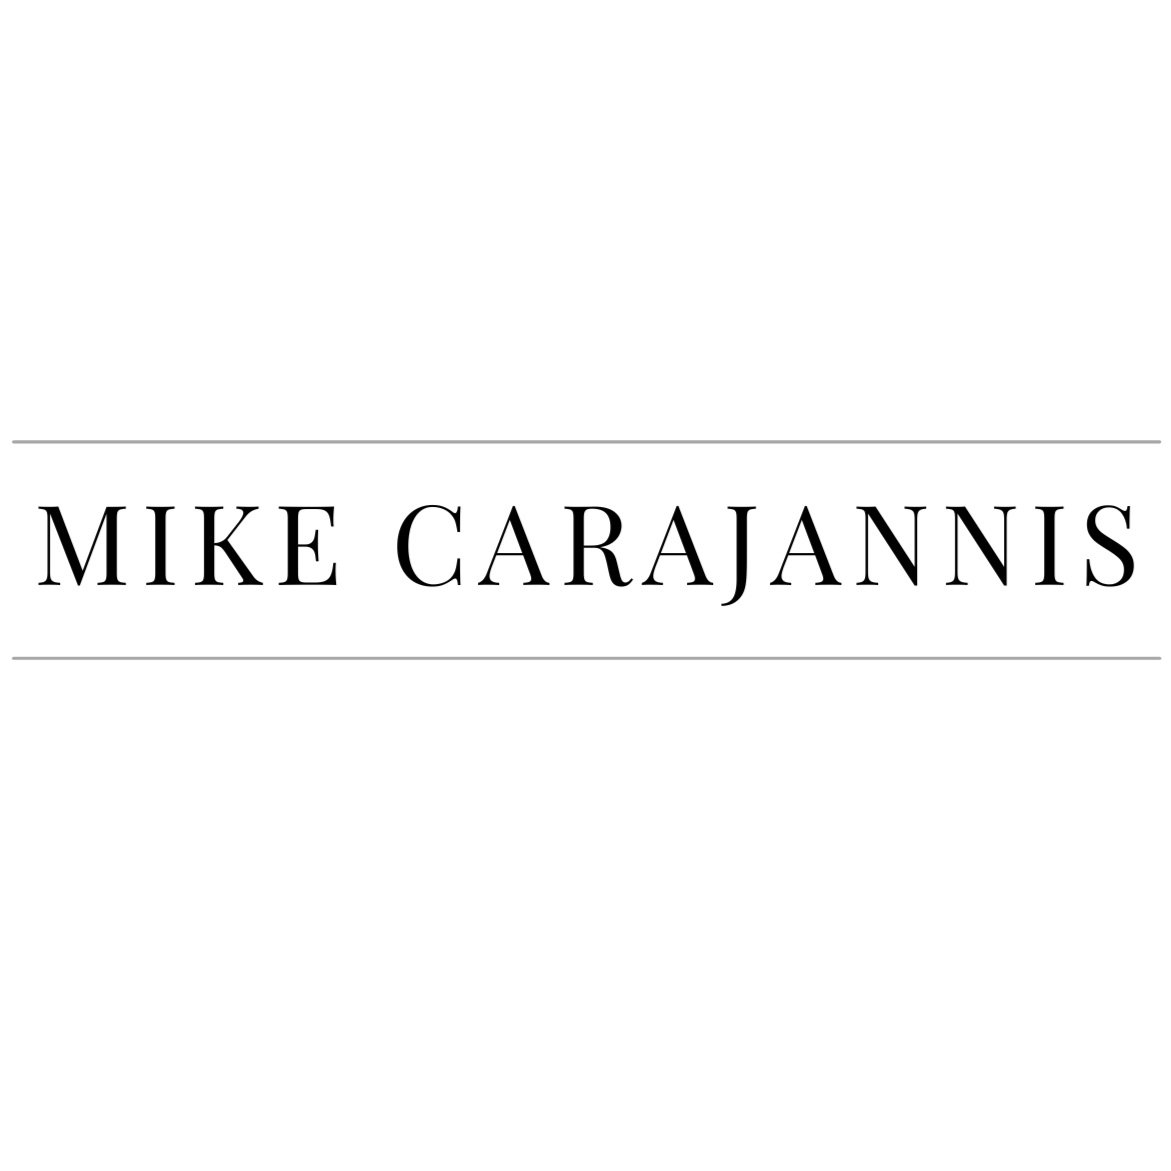 Mike+Carajannis.jpg